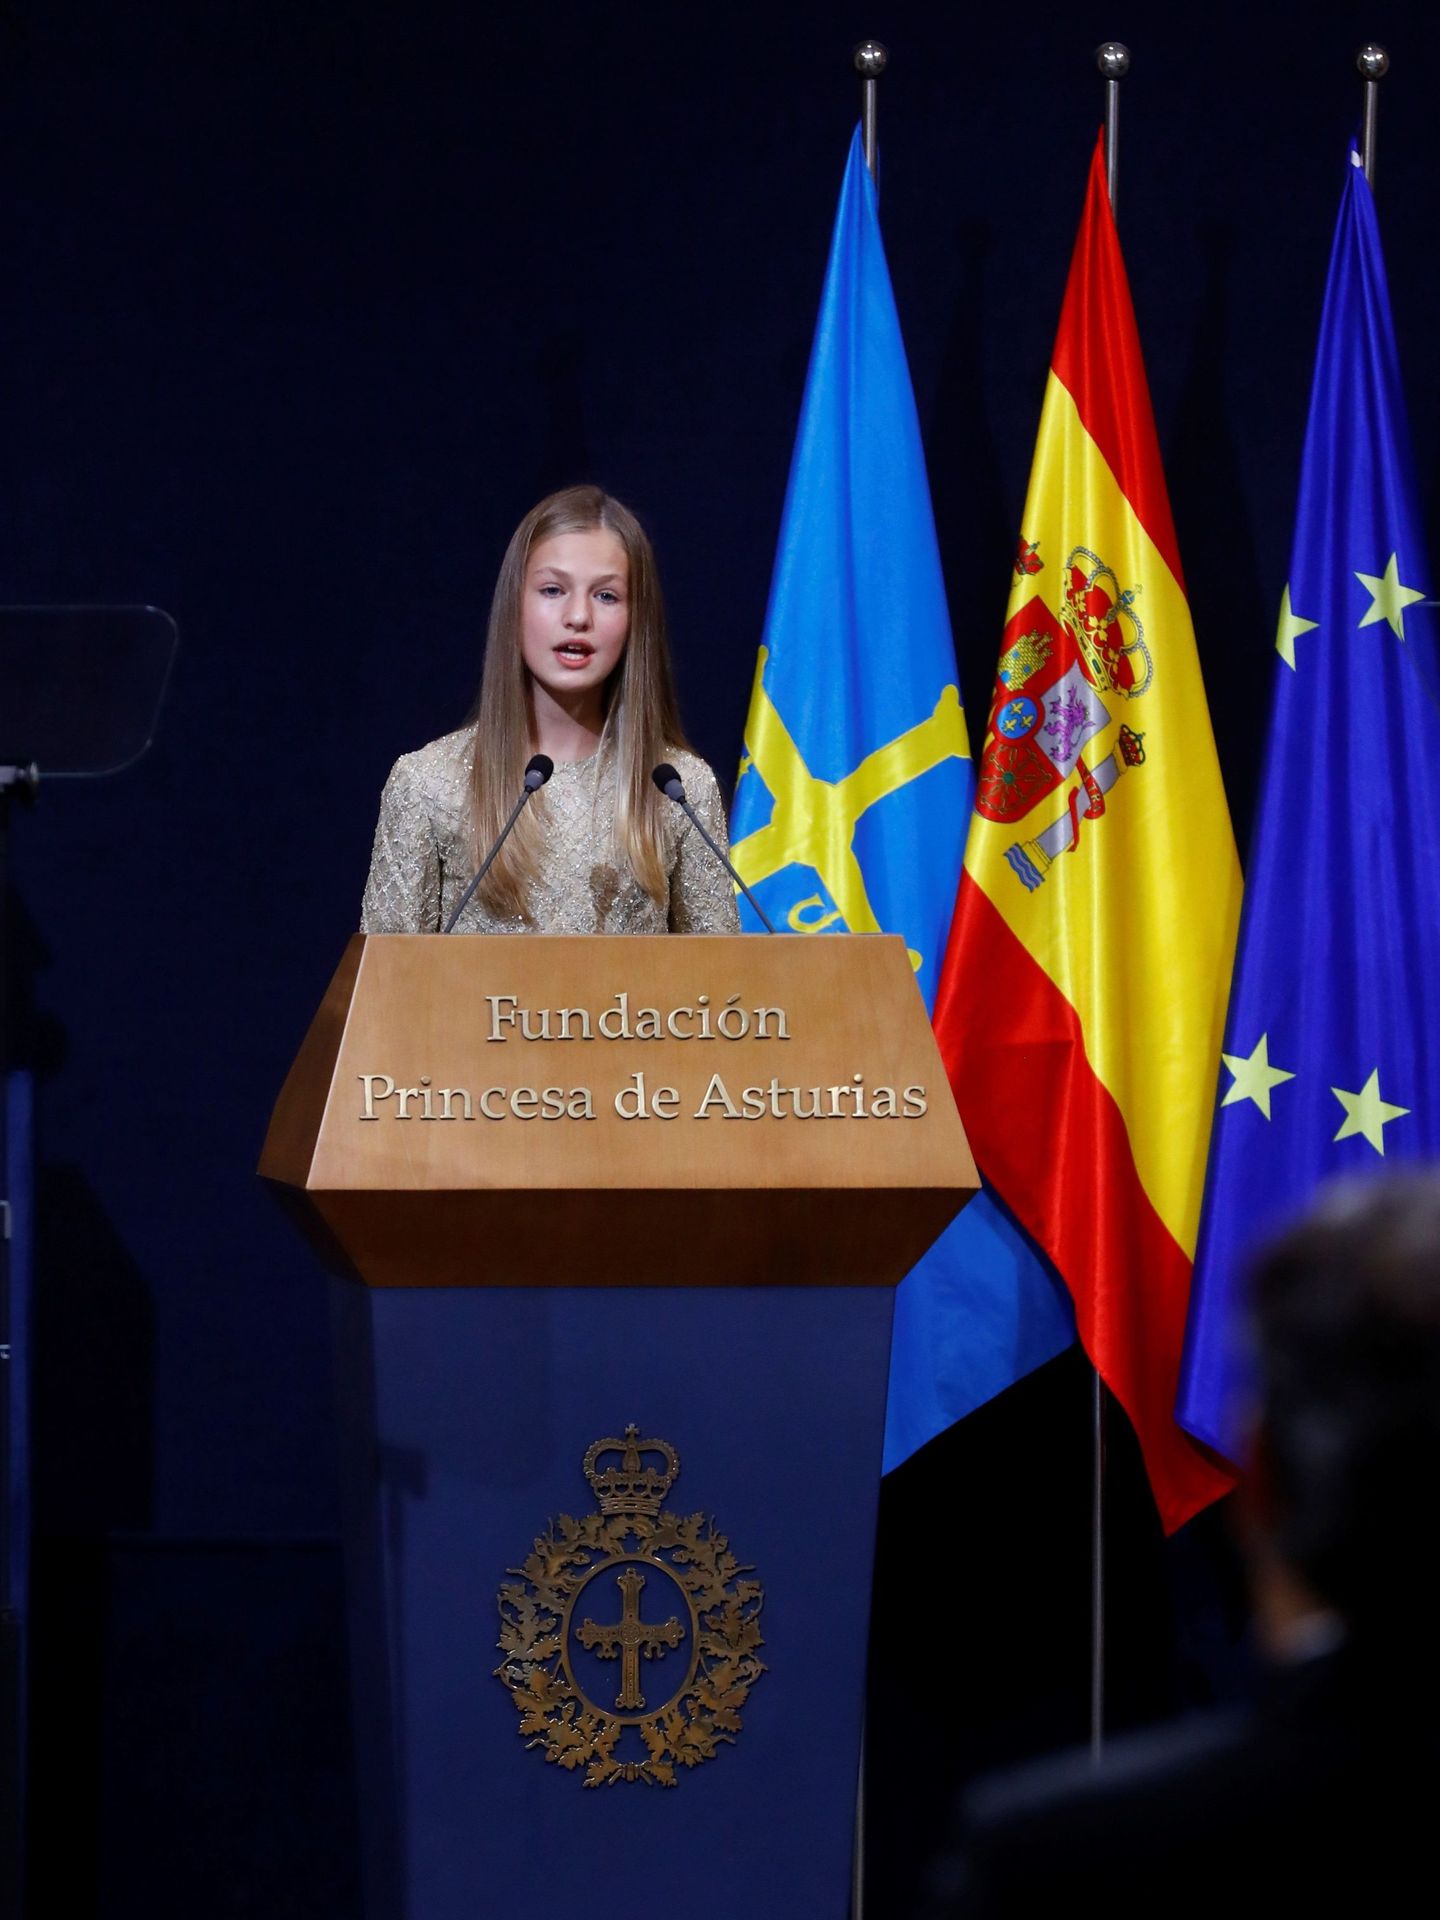 La princesa Leonor pronuncia un discurso durante la ceremonia de entrega de los Premios Princesa de Asturias. (EFE/Ballesteros)